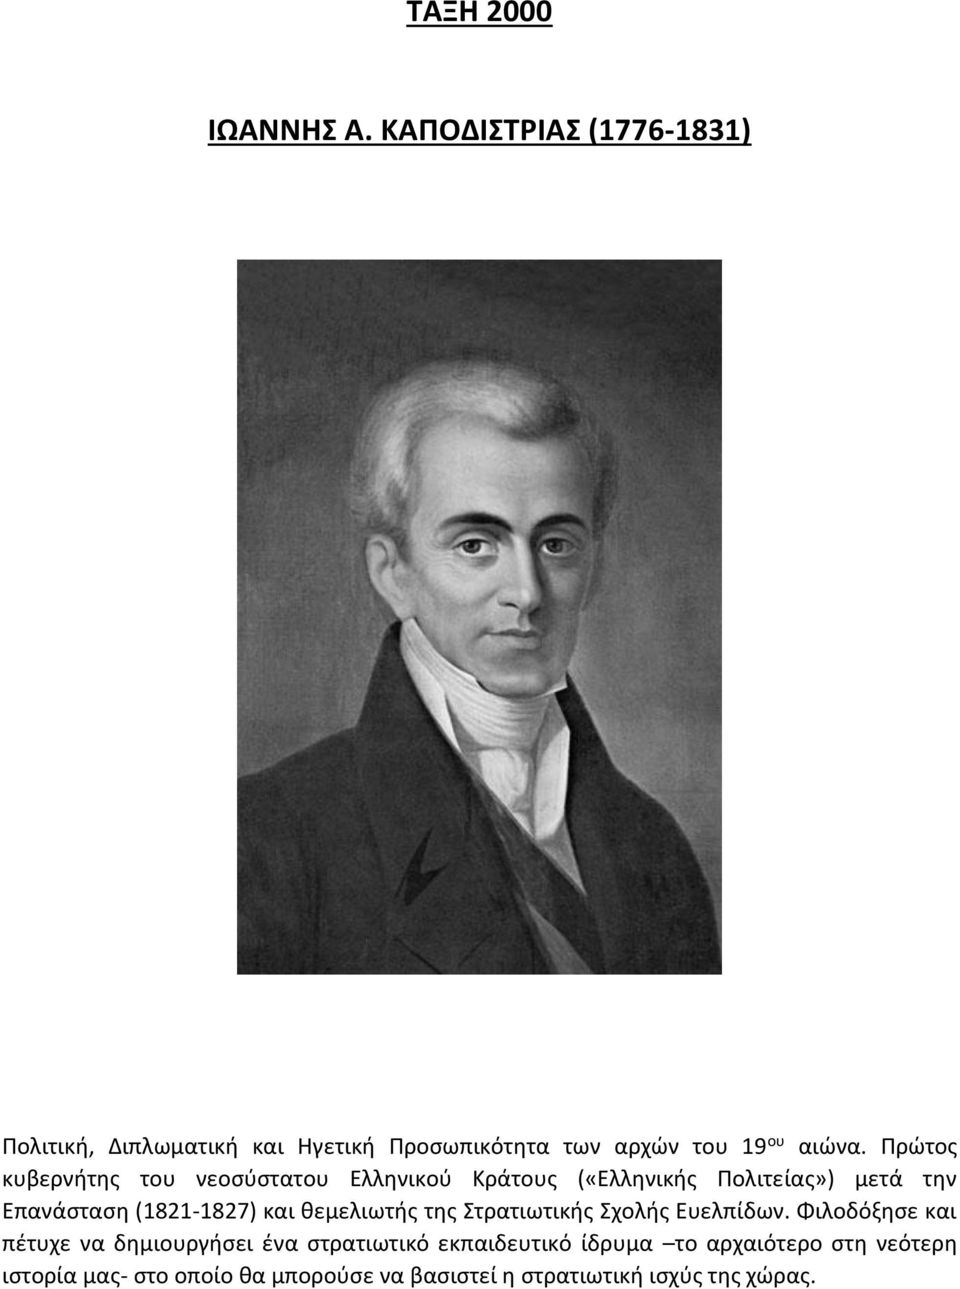 Πρώτος κυβερνήτης του νεοσύστατου Ελληνικού Κράτους («Ελληνικής Πολιτείας») μετά την Επανάσταση (1821-1827) και